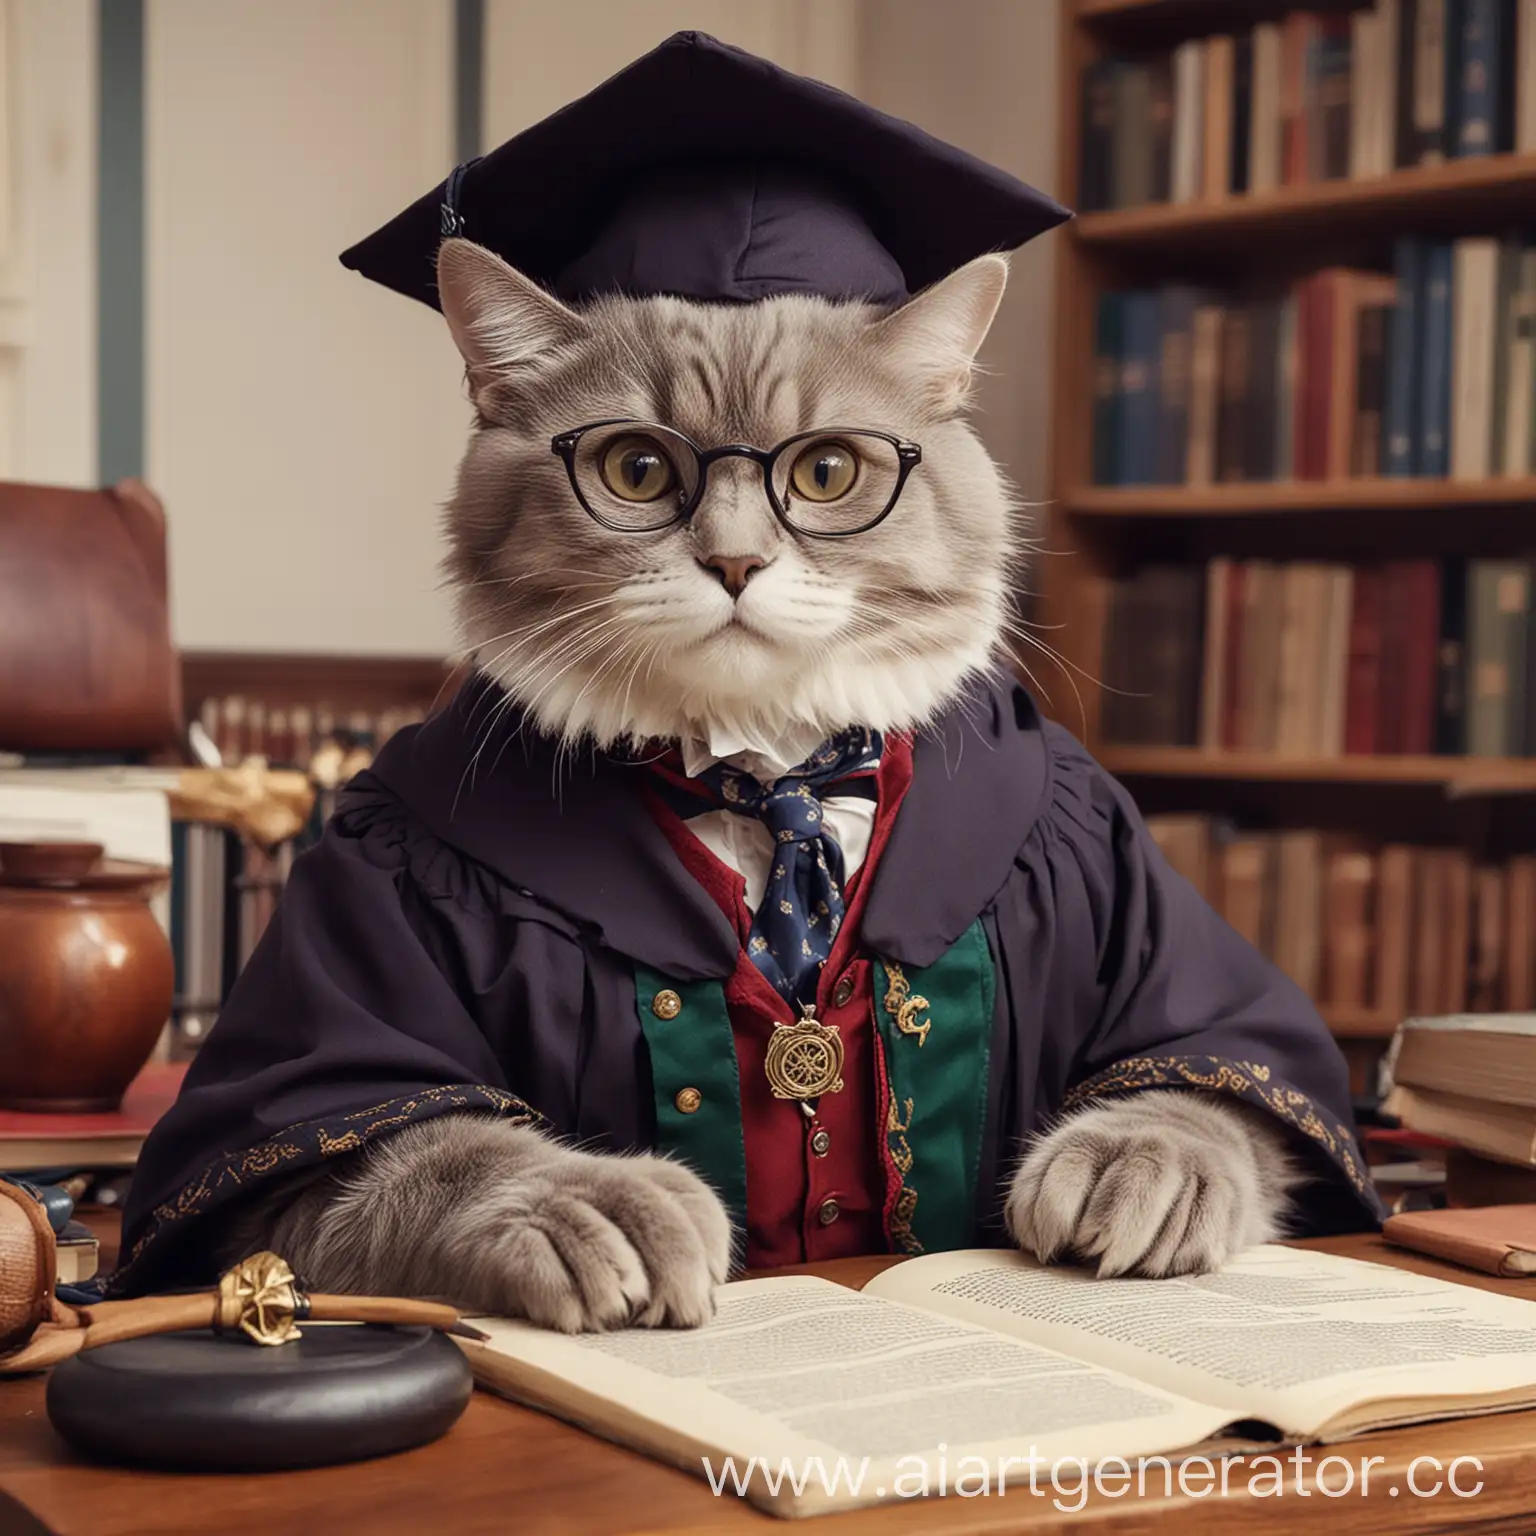 Создать учёную кошку эксцентричную и творческую профессорку Мерлин 🧙🏻‍♀️, всегда готова помочь тебе в твоих учебных проектах и ответить на любые вопросы. 
Кстати, говорят, профессорка Мерлин умеет превращаться в кошку 🐈Профессорке Мерлин будет очень приятно!
